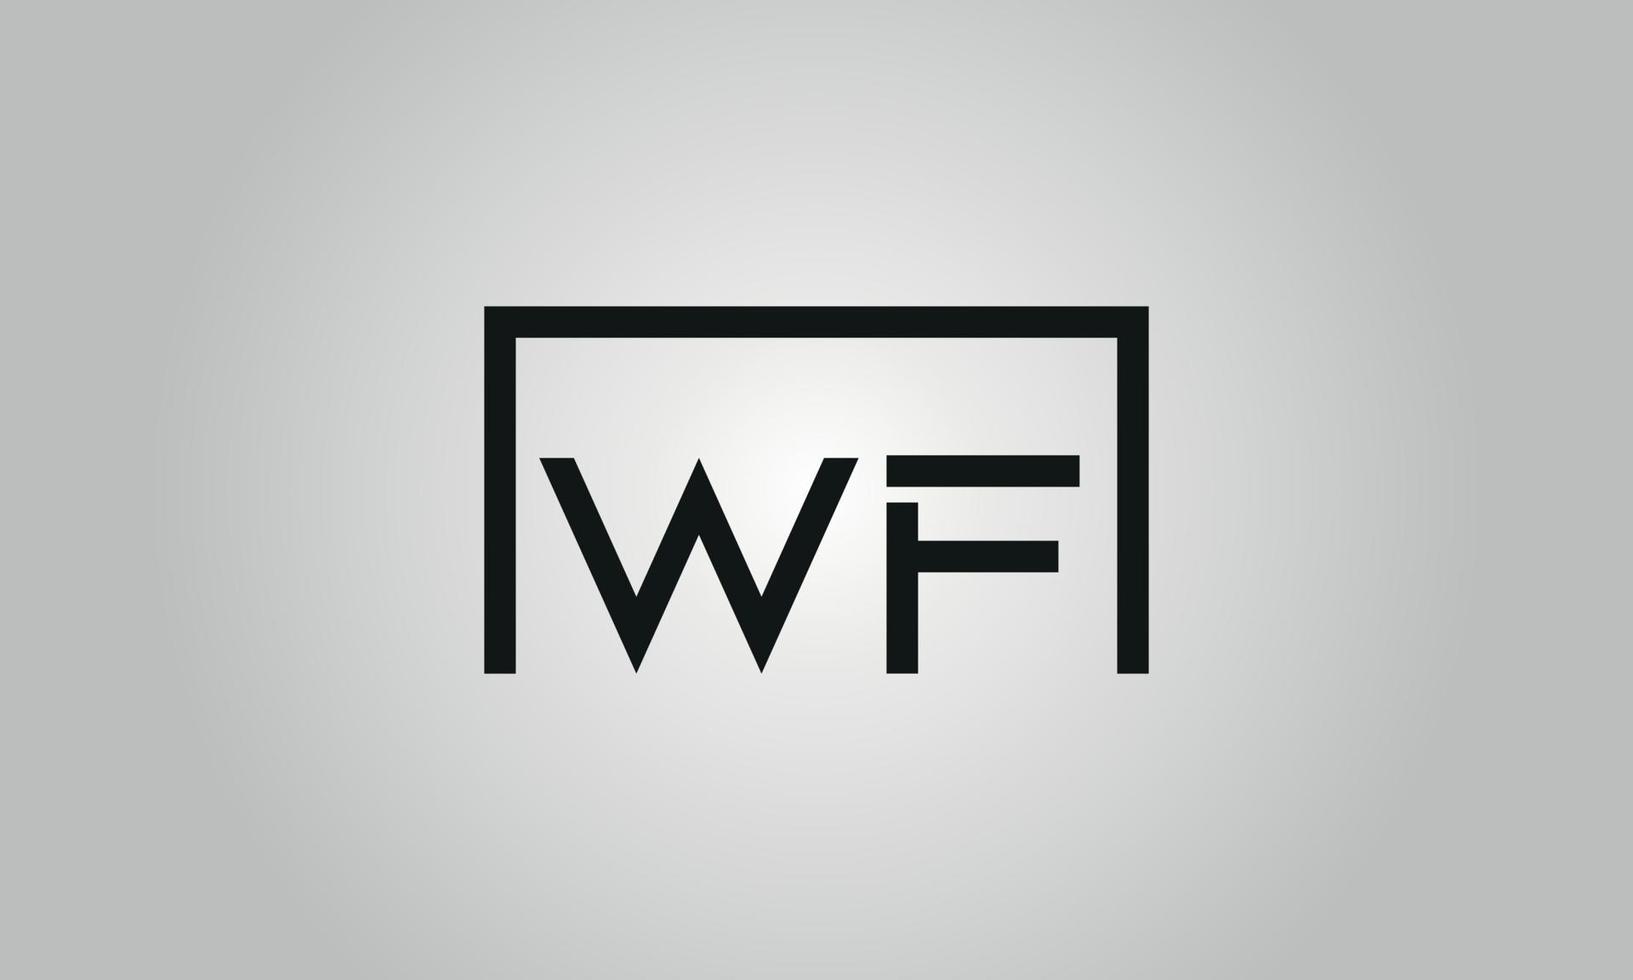 carta wf design de logotipo. wf logotipo com forma quadrada em cores pretas modelo de vetor livre.